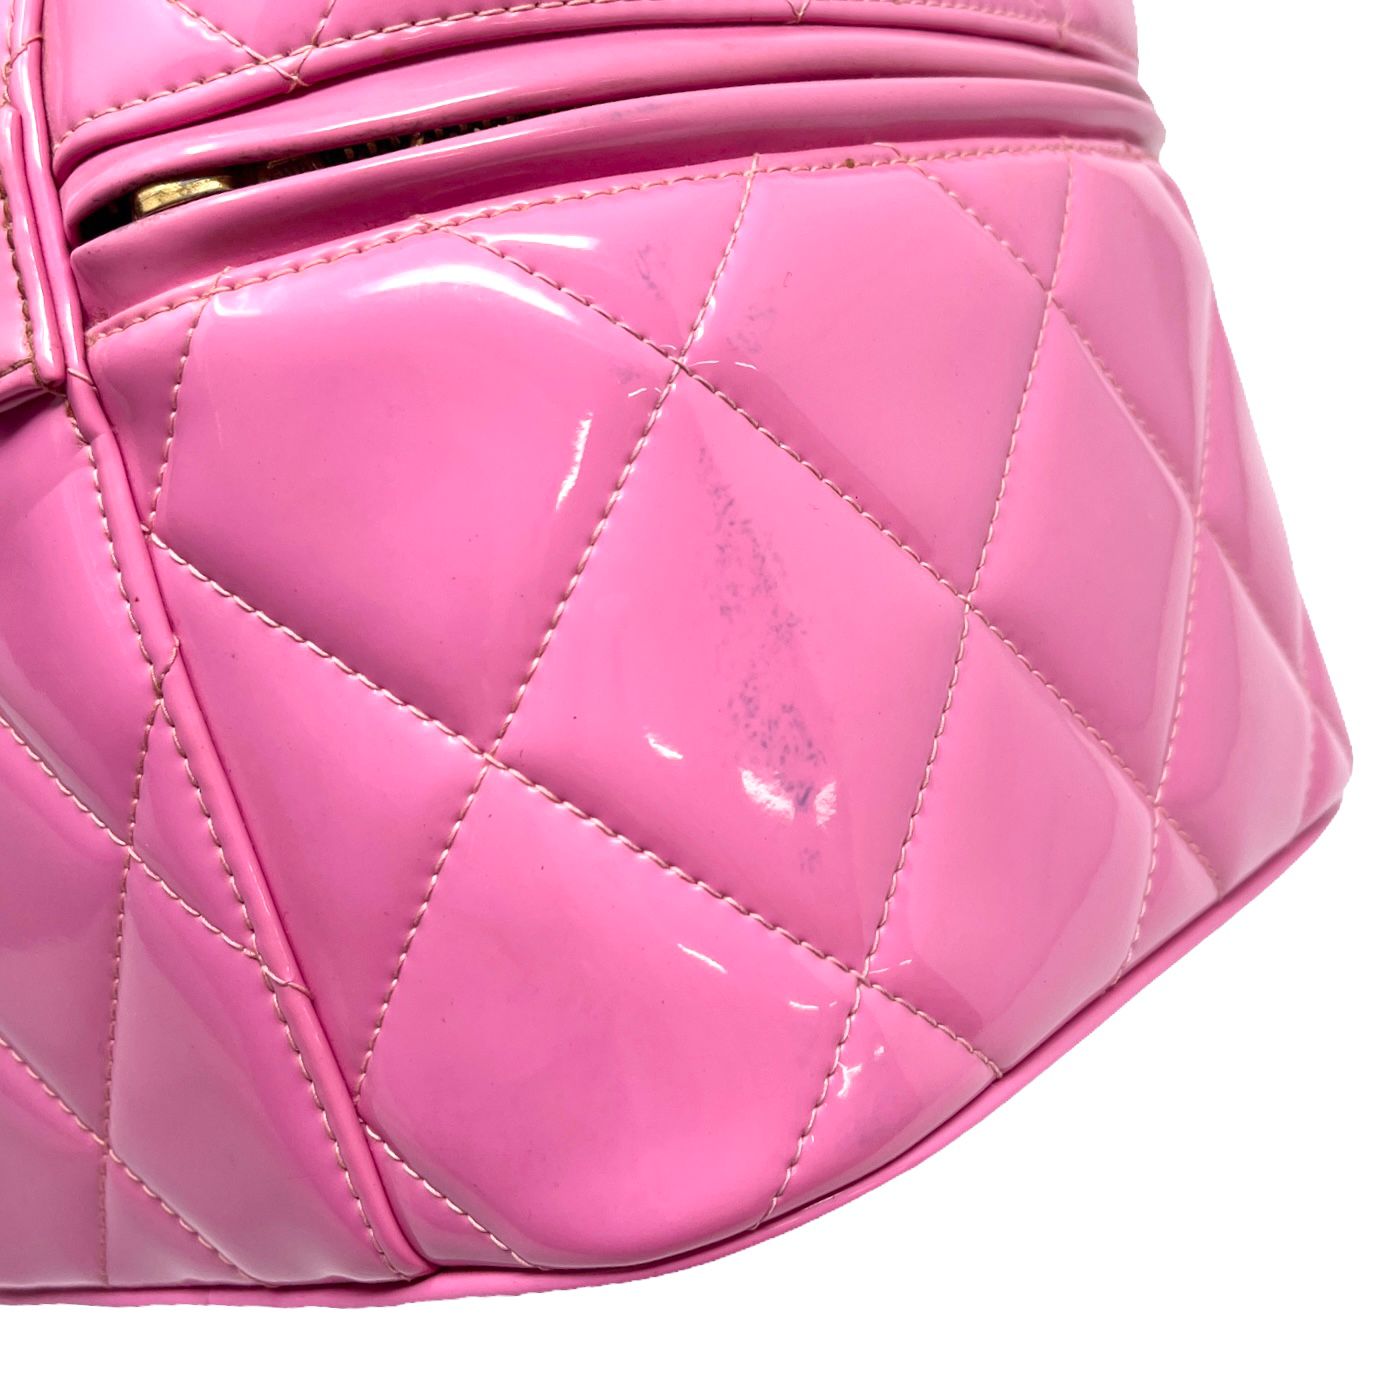 Chanel Pink Turnlock Vanity Bag - Handbags